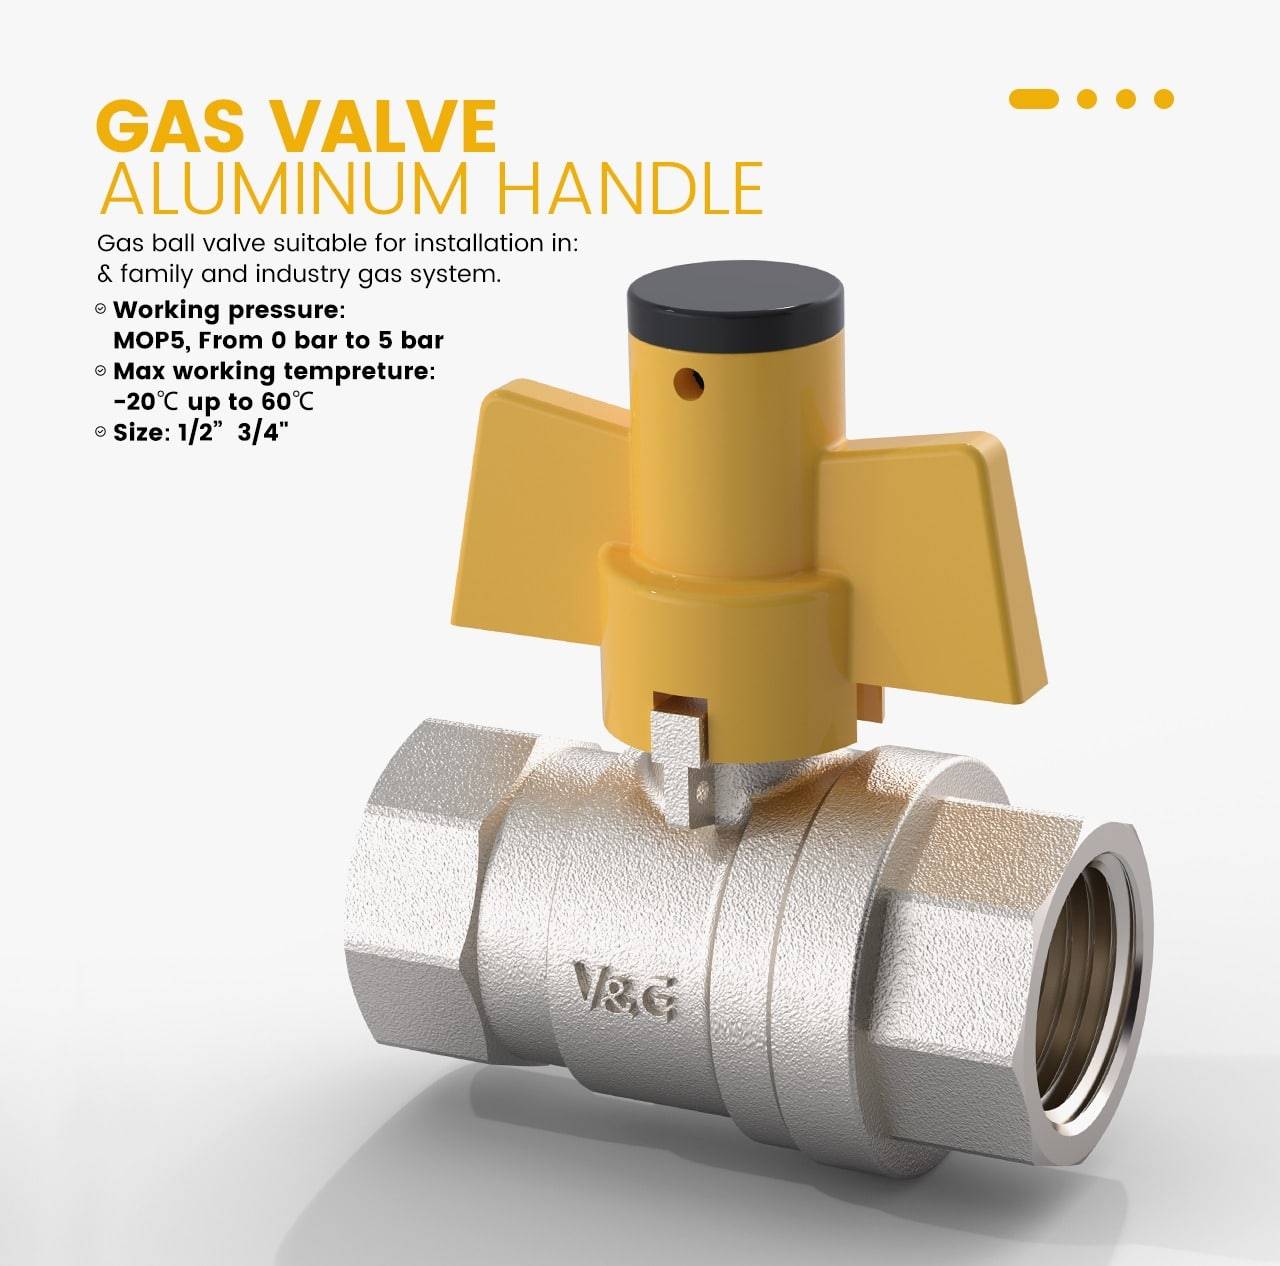 Gas valve Aluminium Handle